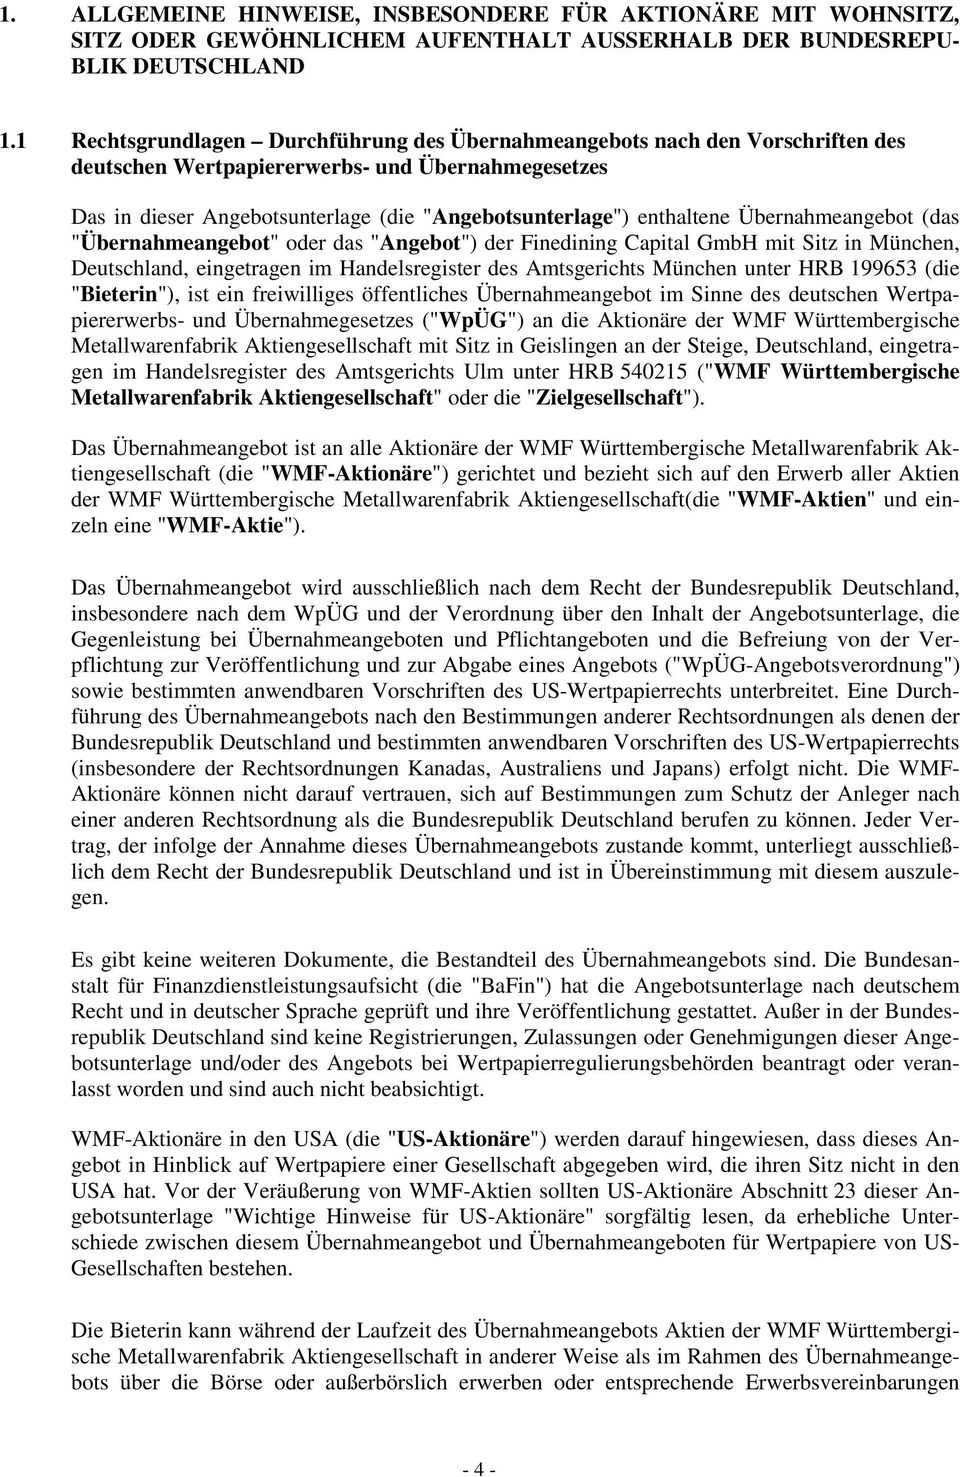 Übernahmeangebot (das "Übernahmeangebot" oder das "Angebot") der Finedining Capital GmbH mit Sitz in München, Deutschland, eingetragen im Handelsregister des Amtsgerichts München unter HRB 199653